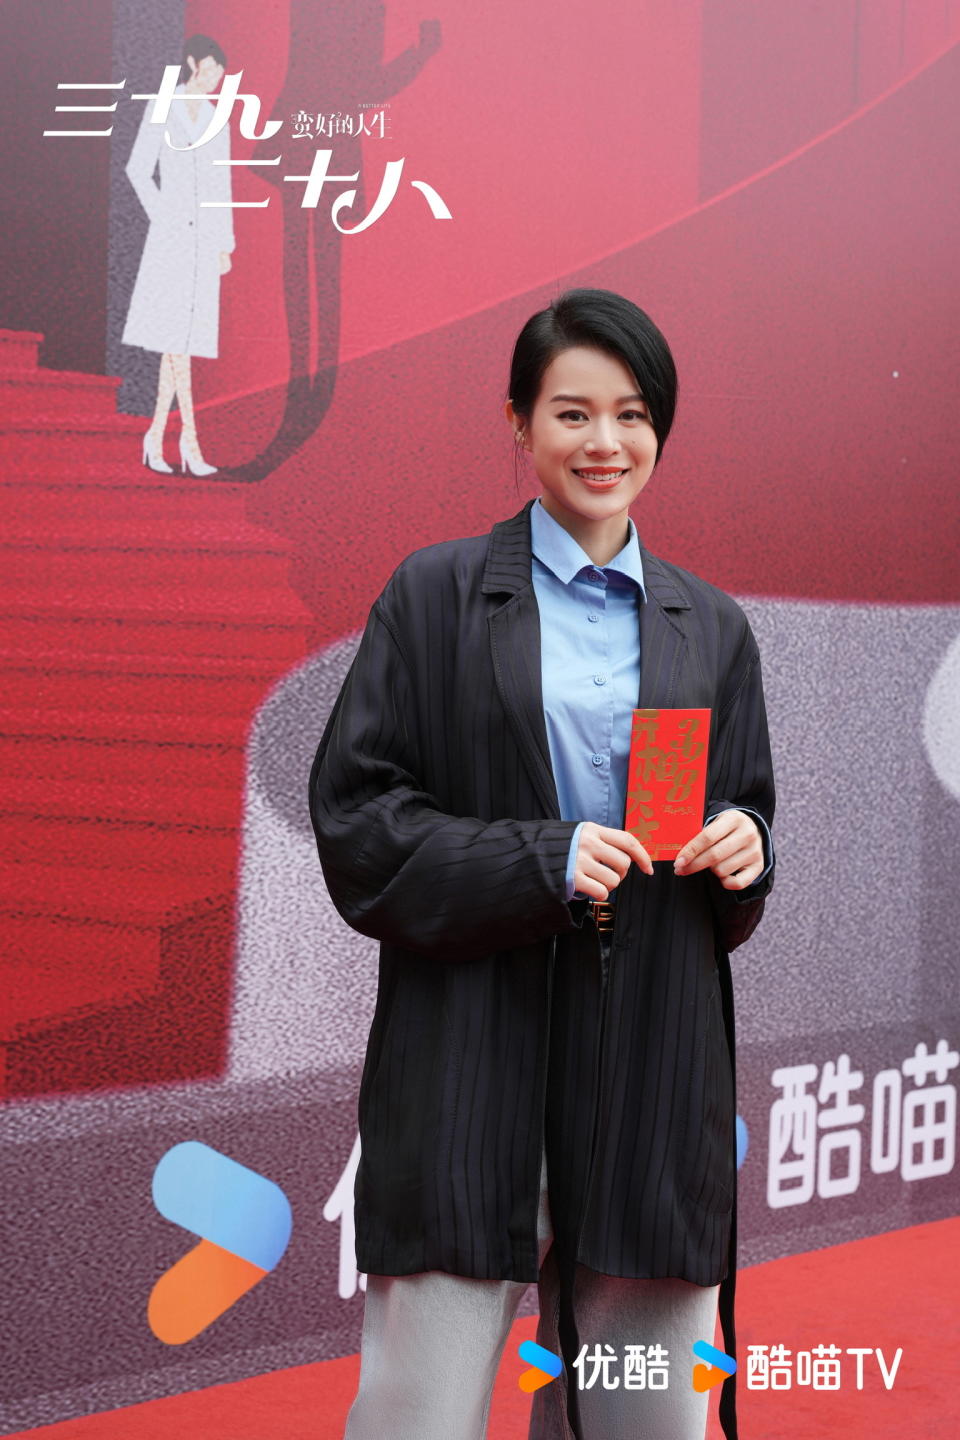 胡杏兒參演內地劇集《惜花芷》  被網民讚「古典夫人」 與孫儷相隔7年再鬥演技
